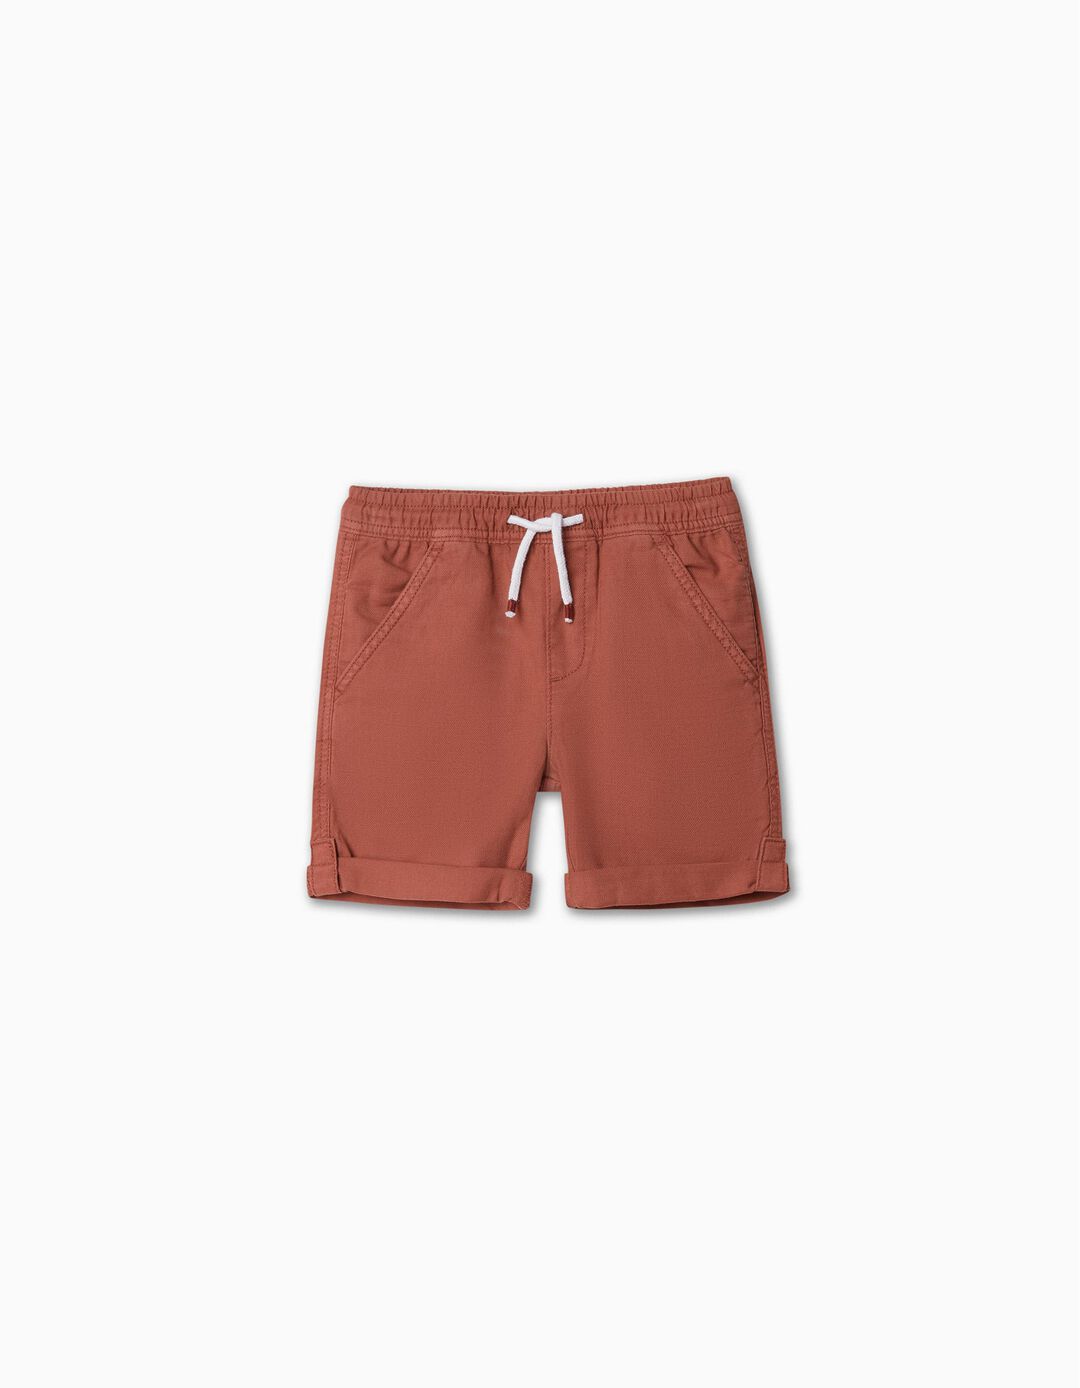 Self-Adhering Strip Shorts, Boy, Brown